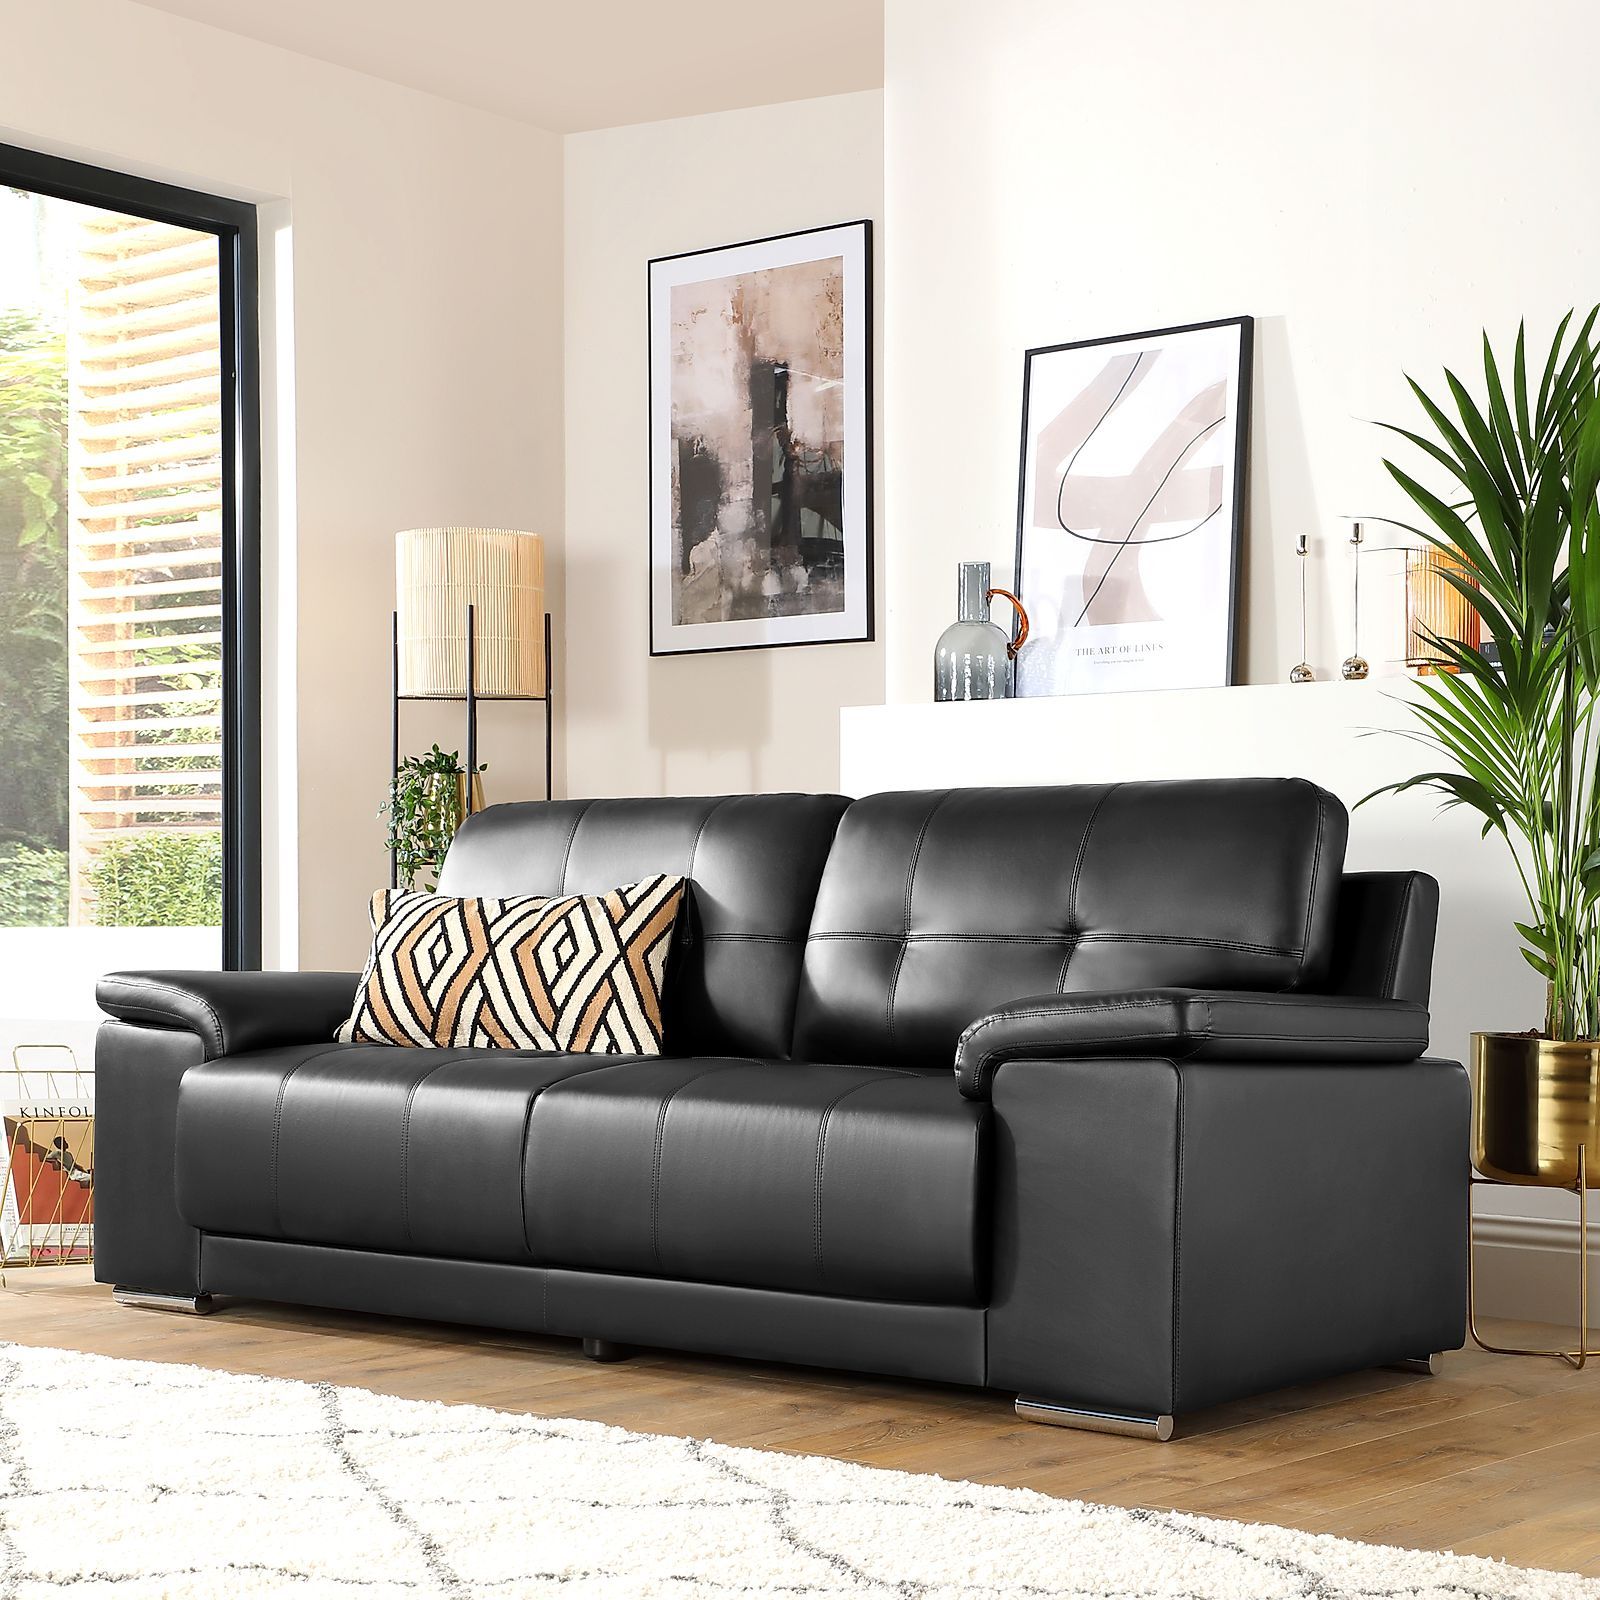 Kansas Black Leather 3 Seater Sofa | Furniture Choice Regarding 3 Seat L Shaped Sofas In Black (View 6 of 20)